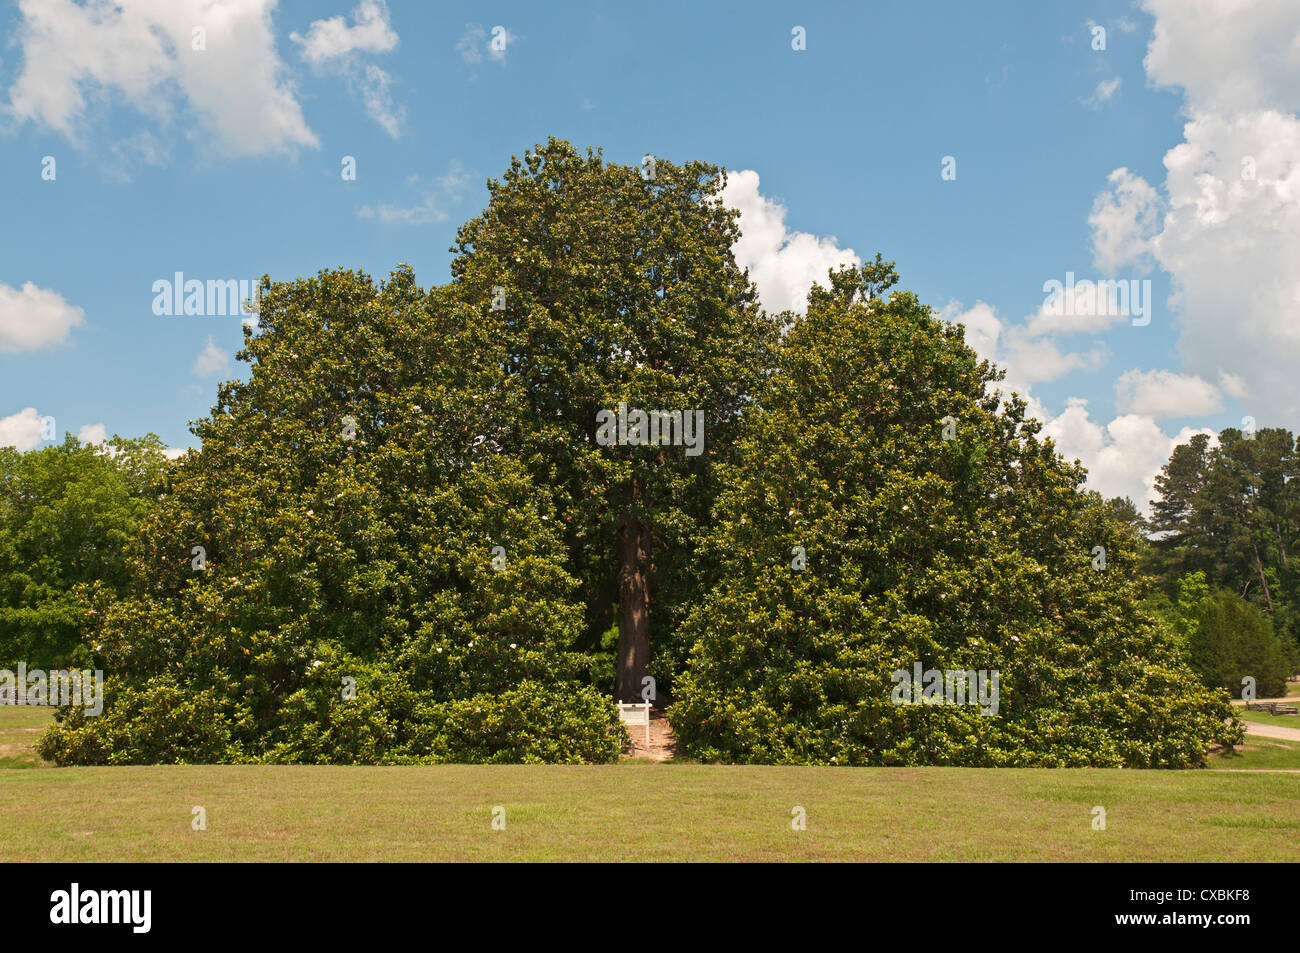 Arkansas, Washington, historischen Washington State Park, Magnolie c1839, Gesamtheit ist ein Baum des Landes größte zertifiziert. Stockfoto